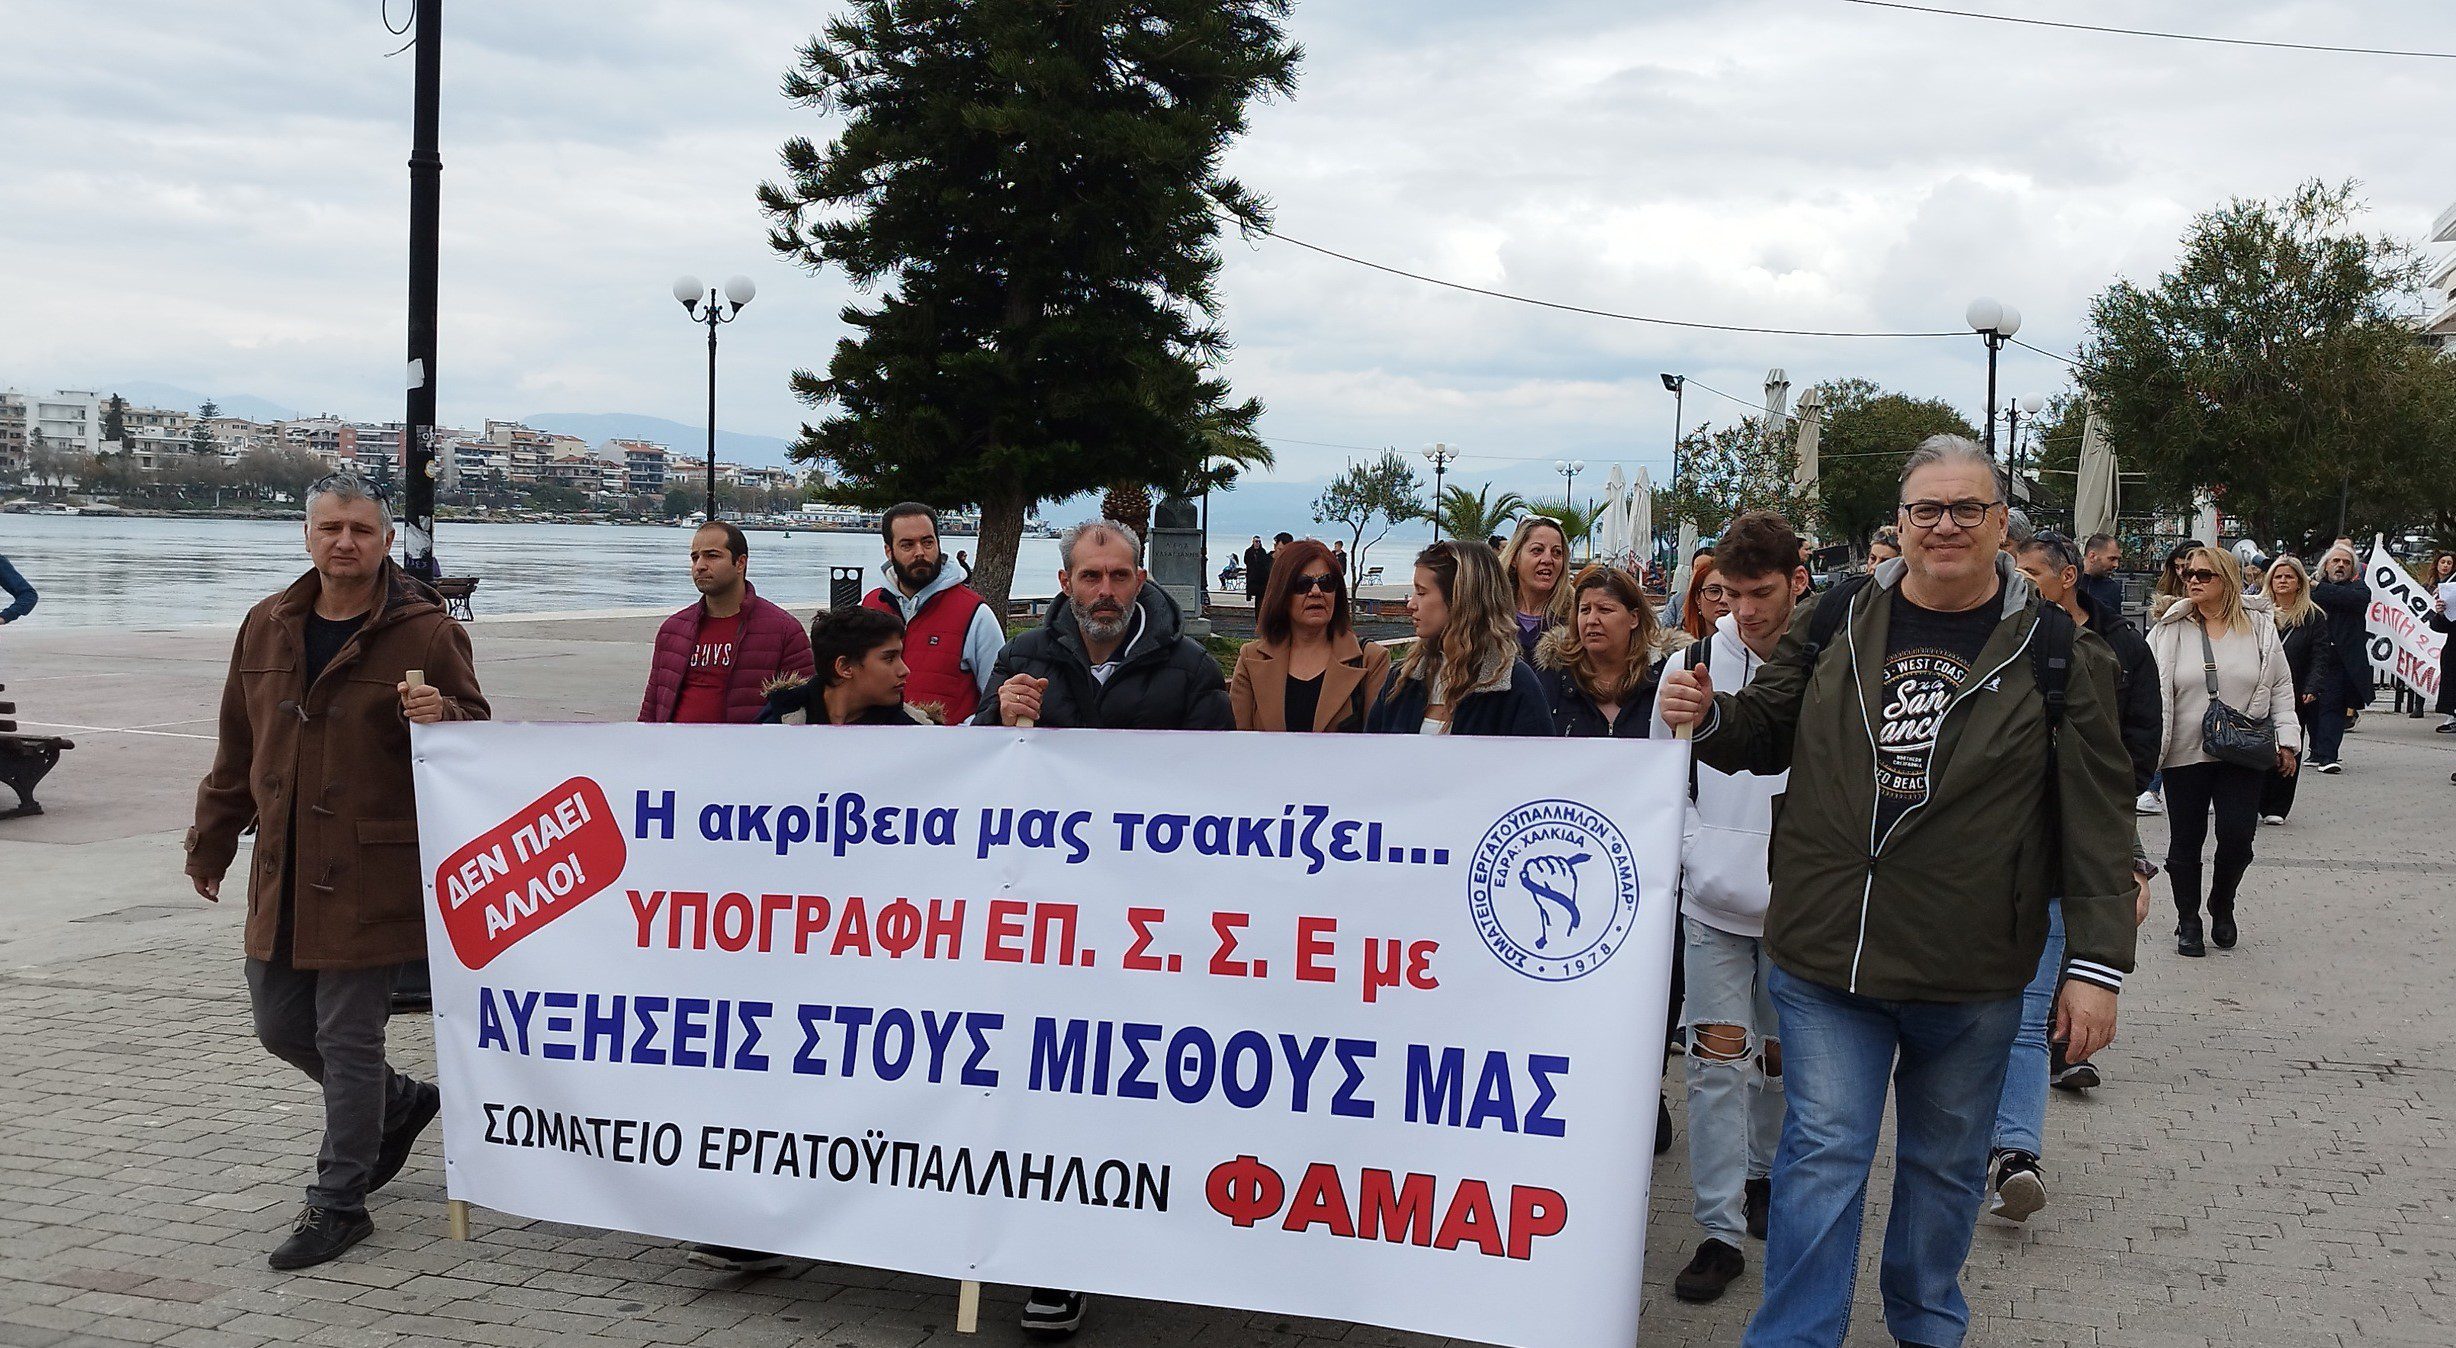 Εύβοια: Κινητοποίηση για την Απεργία της Πρωτομαγιάς